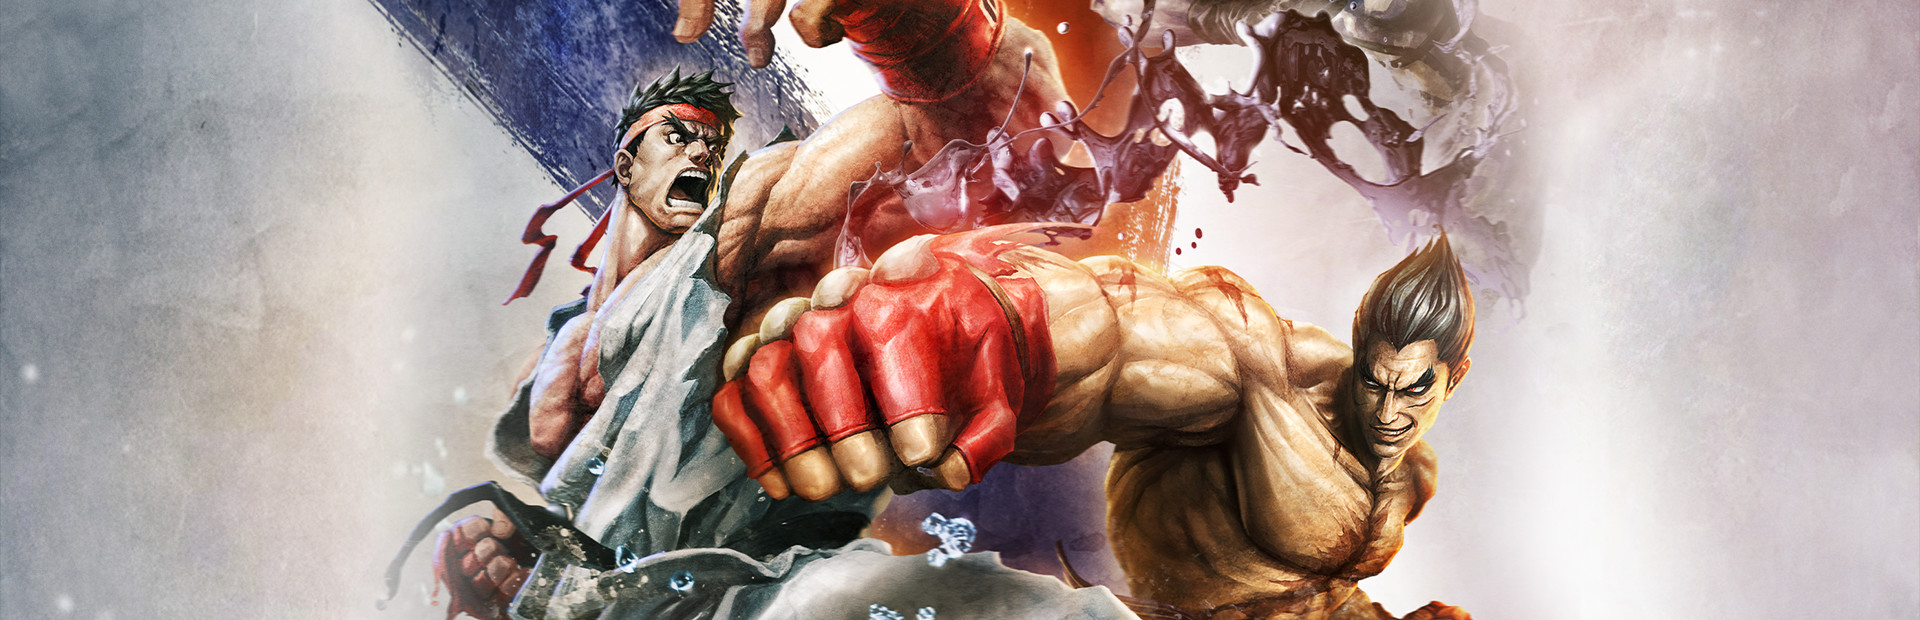 Street Fighter X Tekken cover image